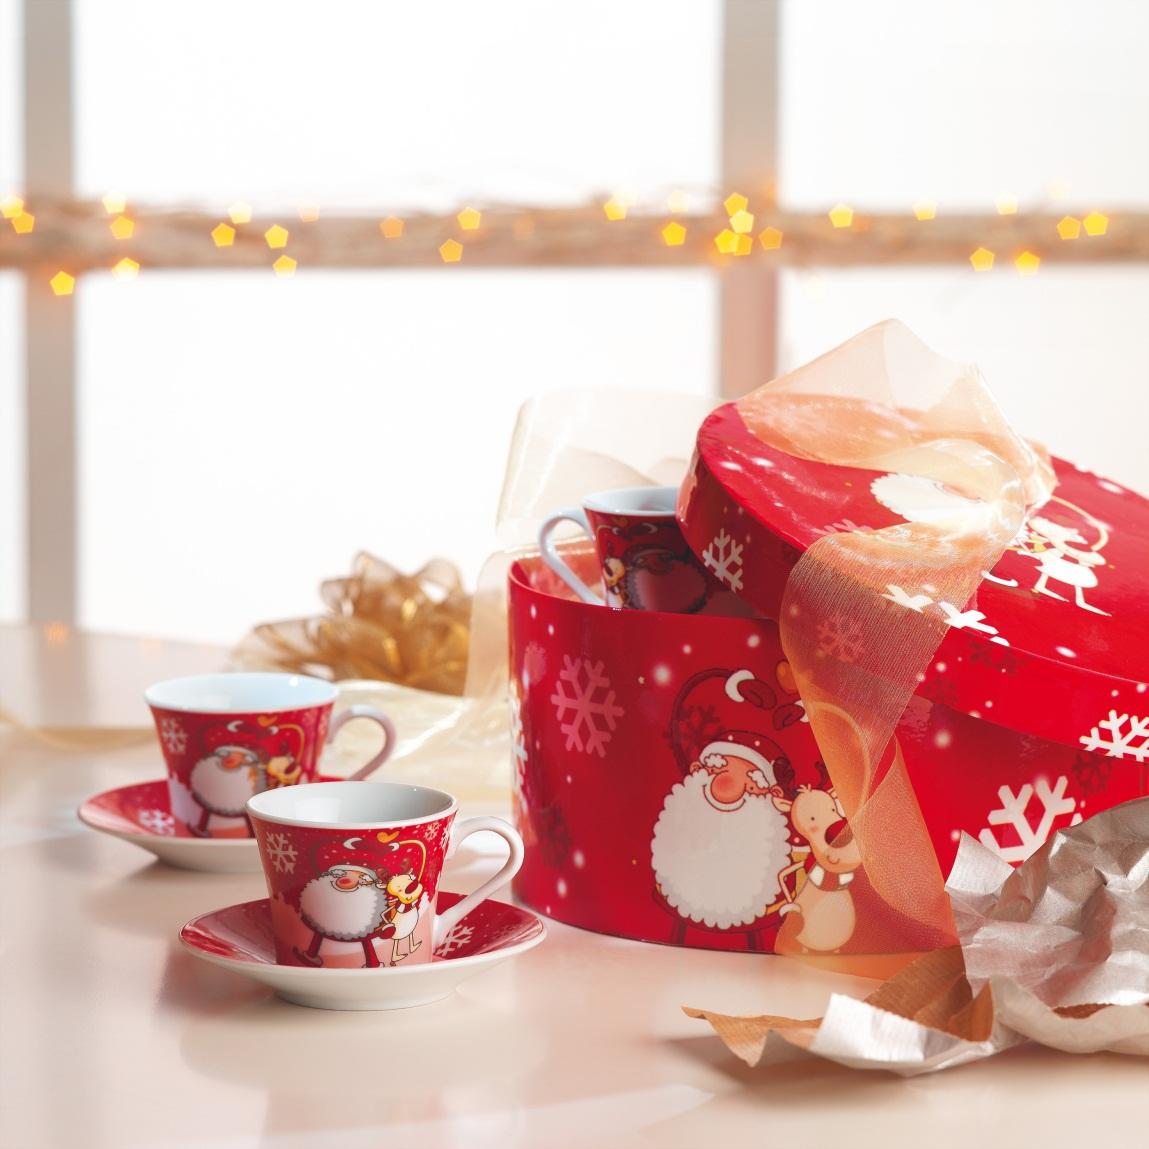 12) CX1192: 12-częściowy świąteczny komplet do kawy w ozdobnym kartonowym świątecznym pudełku.